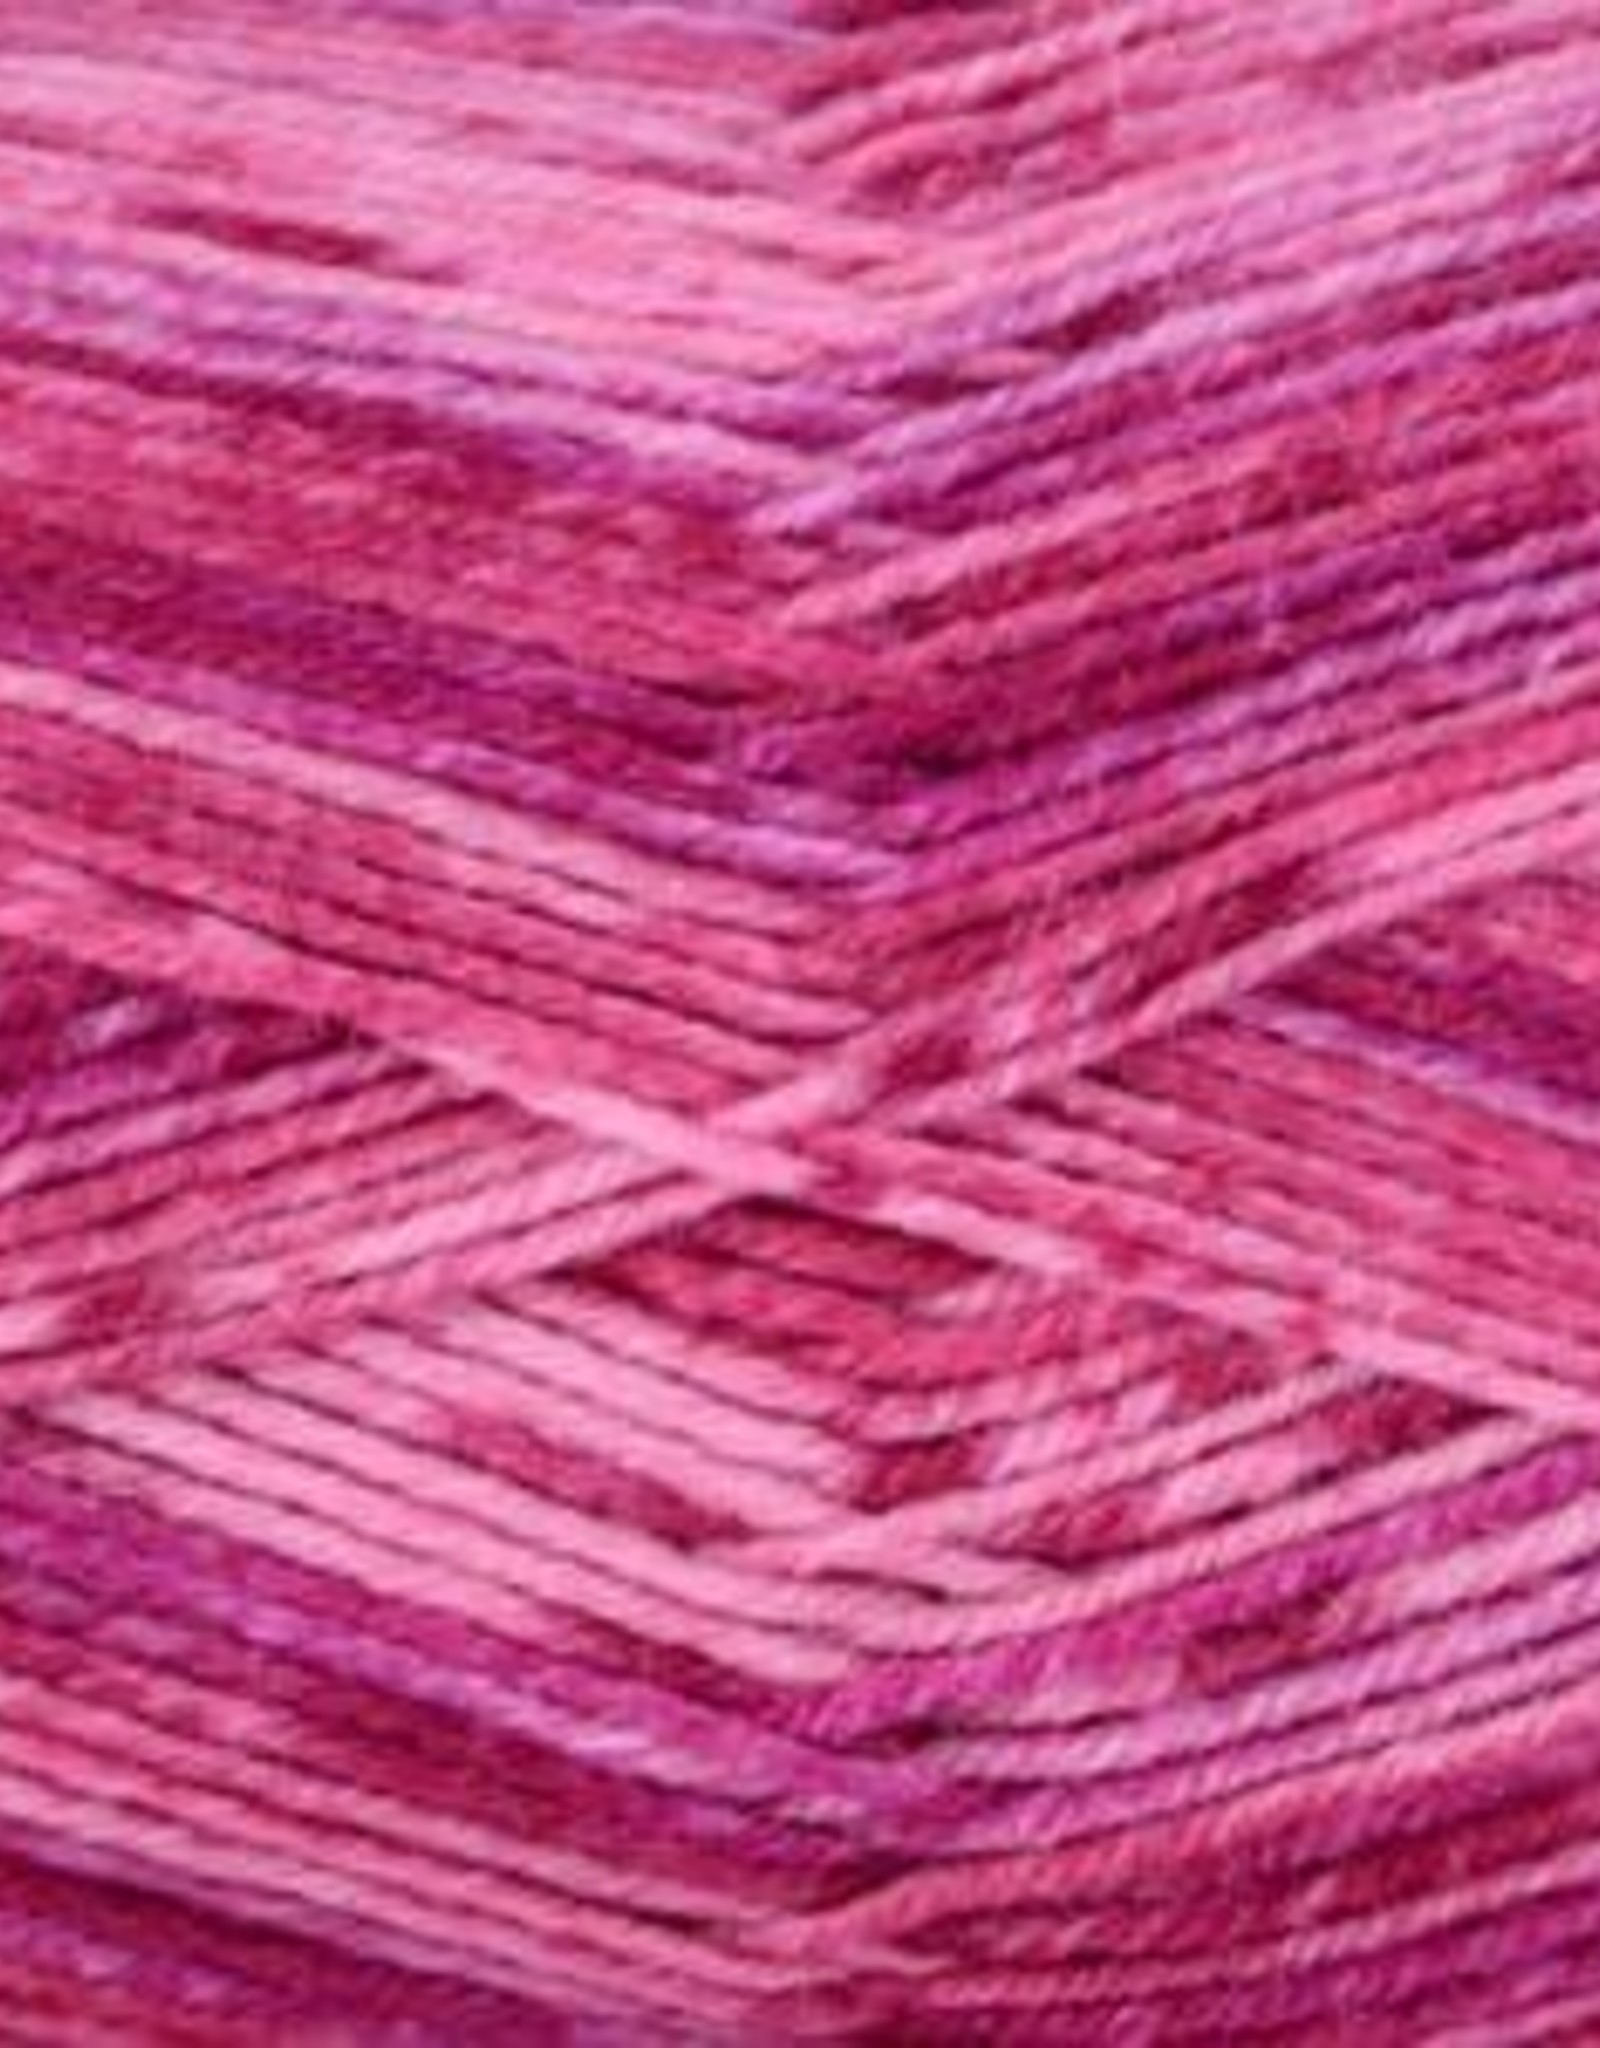 Universal Yarn Angora Lace